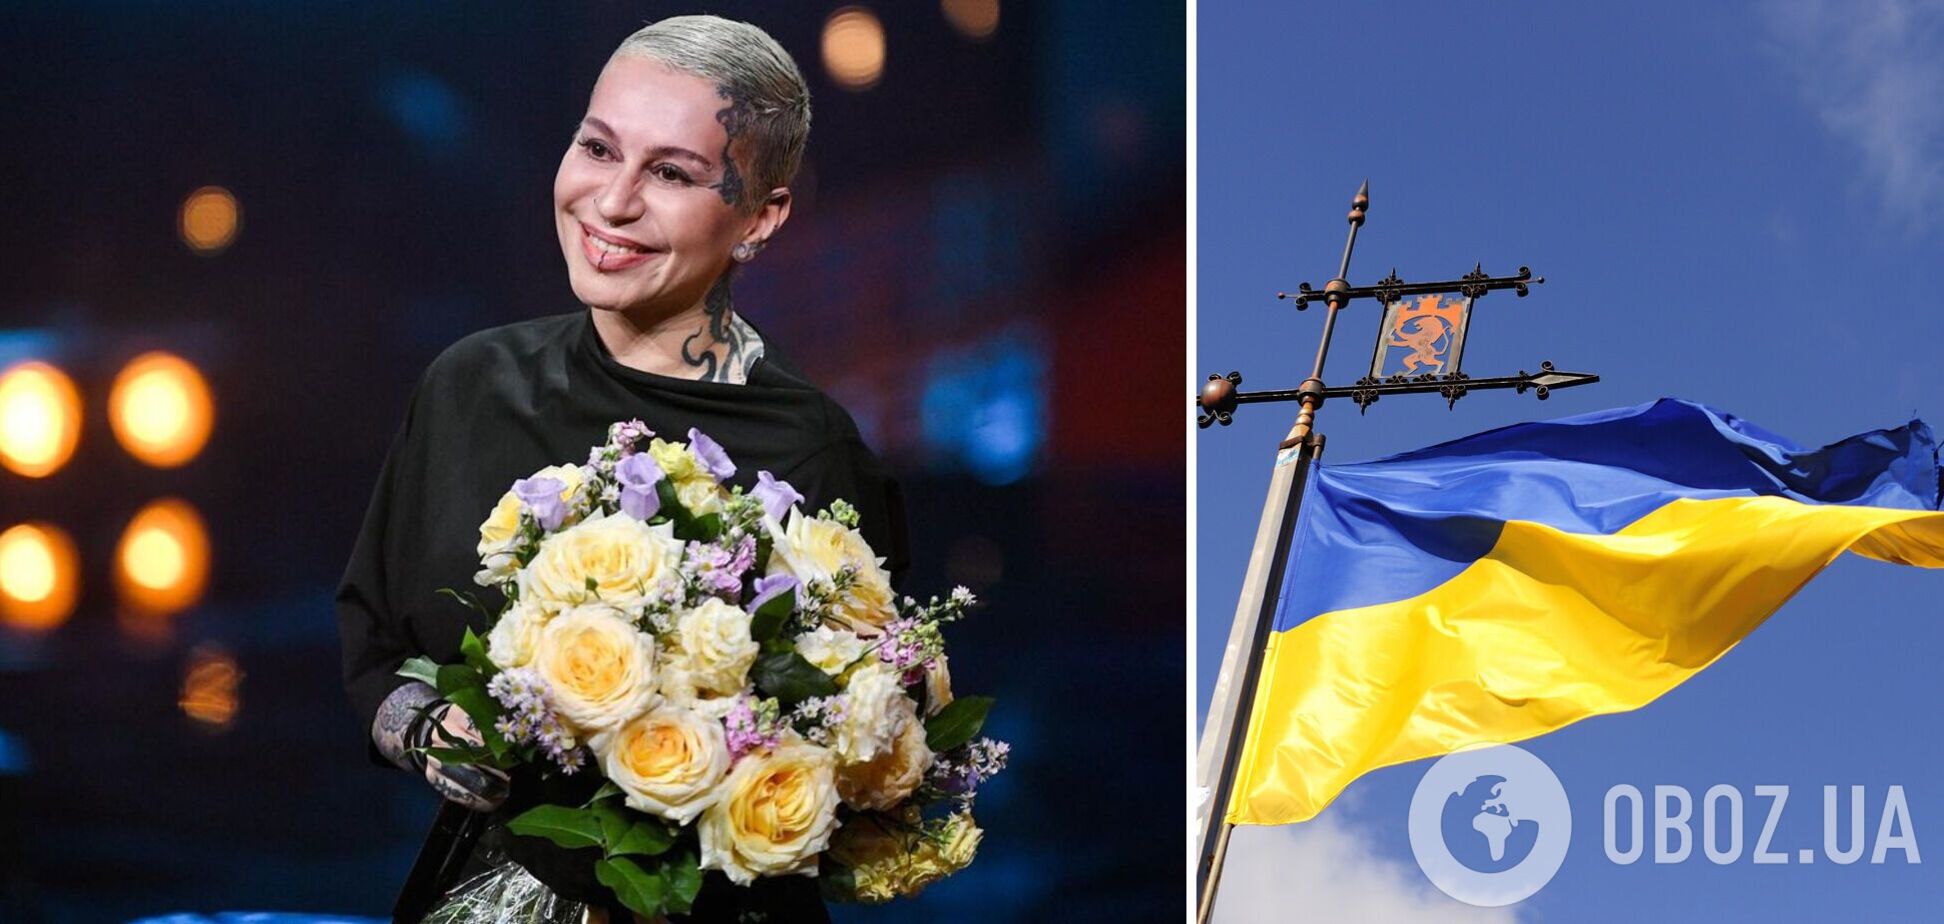 Наргиз Закирова после депортации из России показал сине-желтый маникюр и тепло поддержала Украину